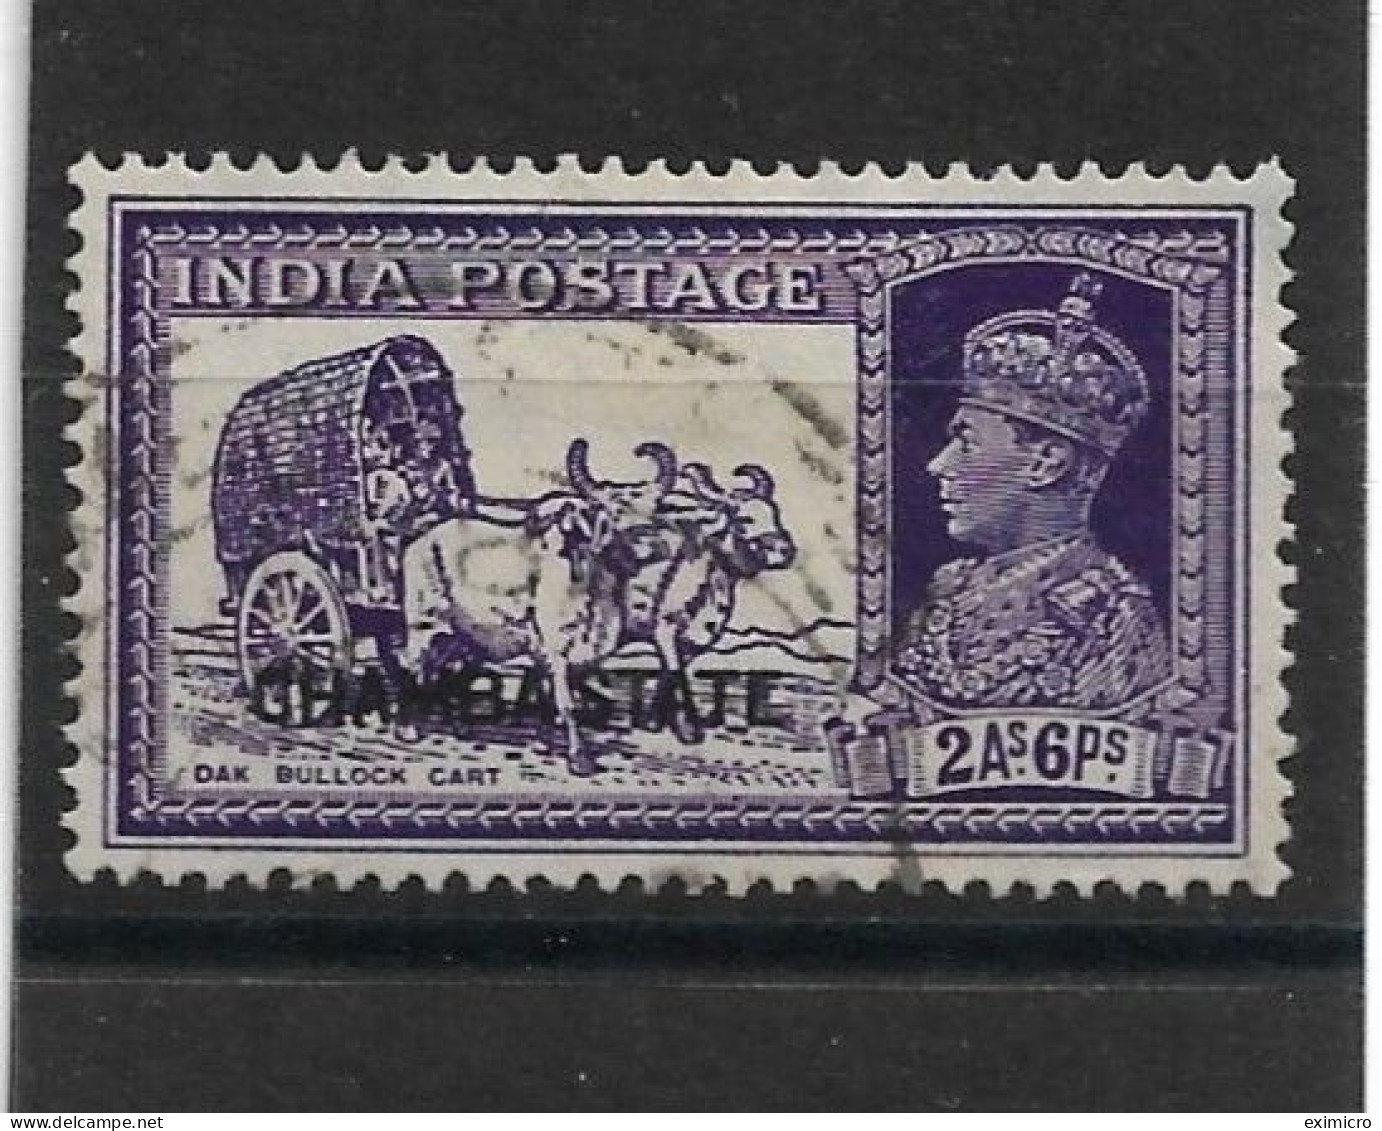 INDIA - CHAMBA 1938 2a 6p SG 87 FINE USED Cat £60 - Chamba